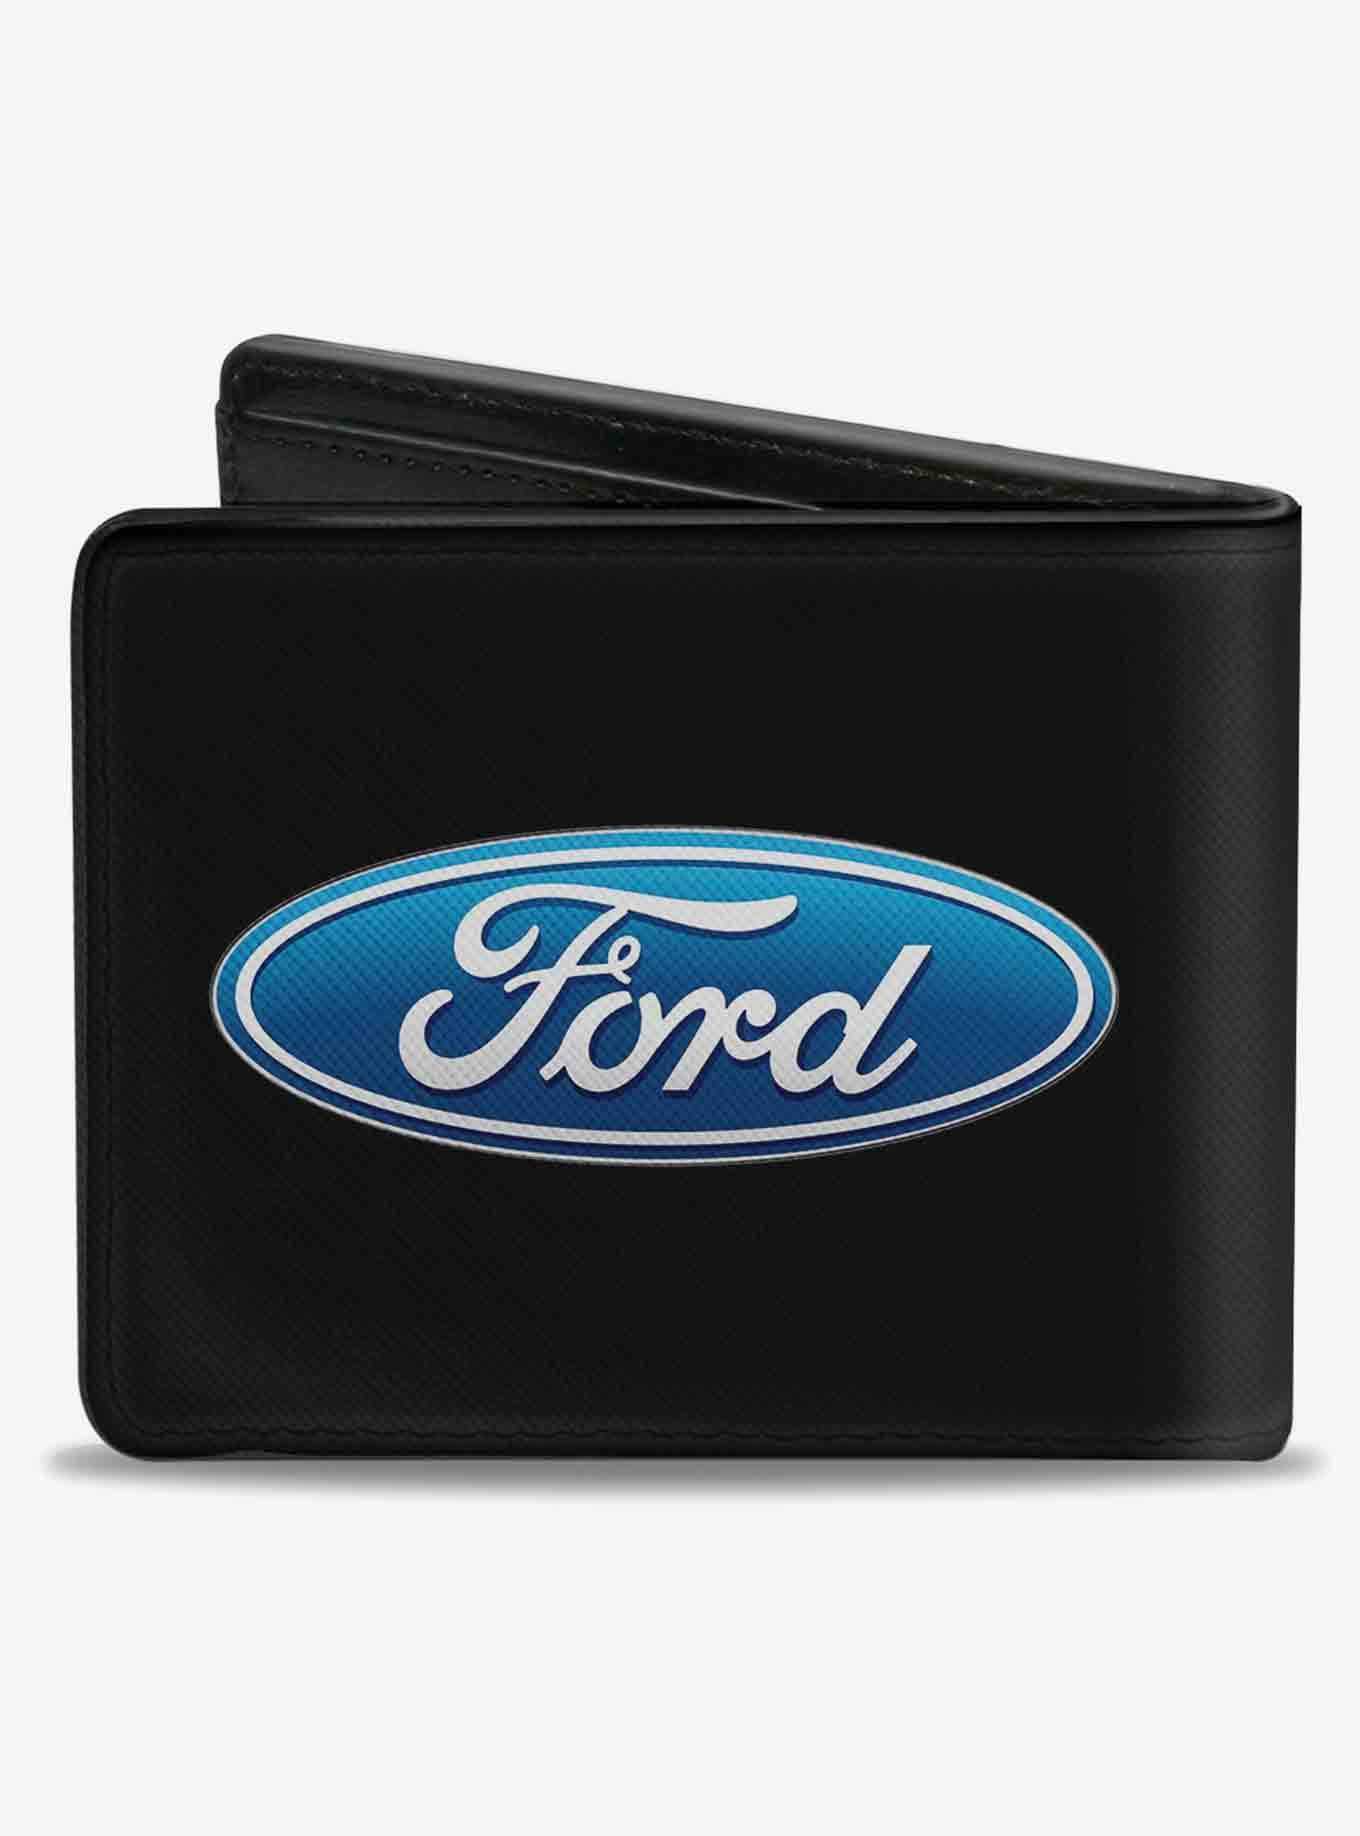 Ford Oval Logo CenteBifold Wallet, , hi-res